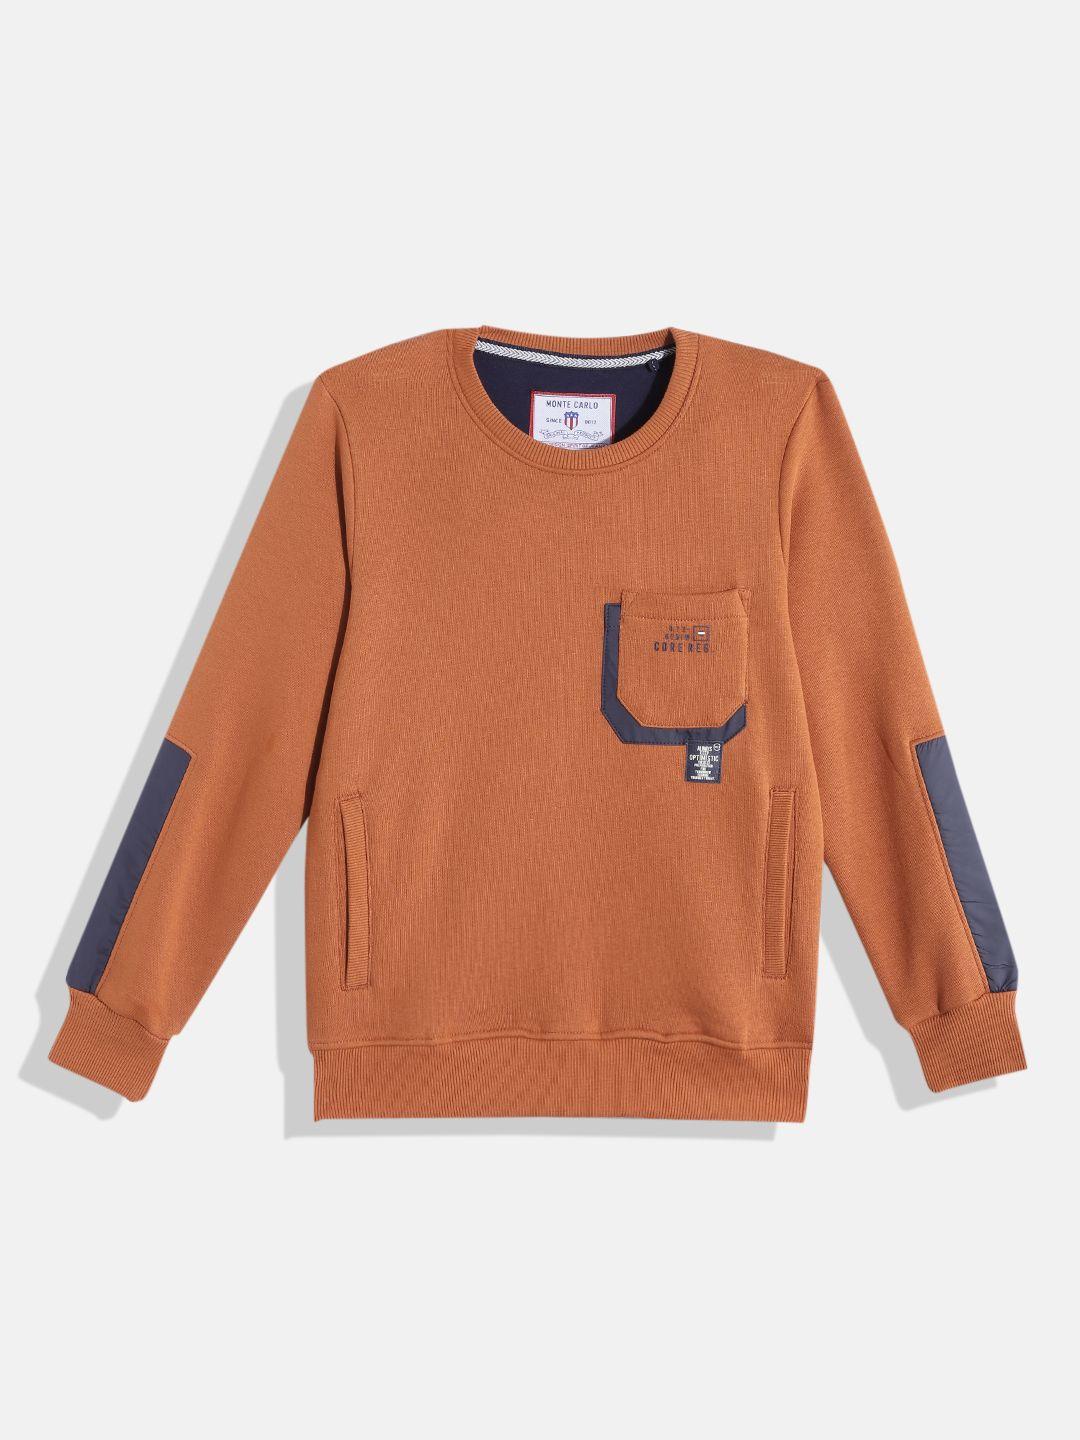 monte carlo boys rust orange solid sweatshirt